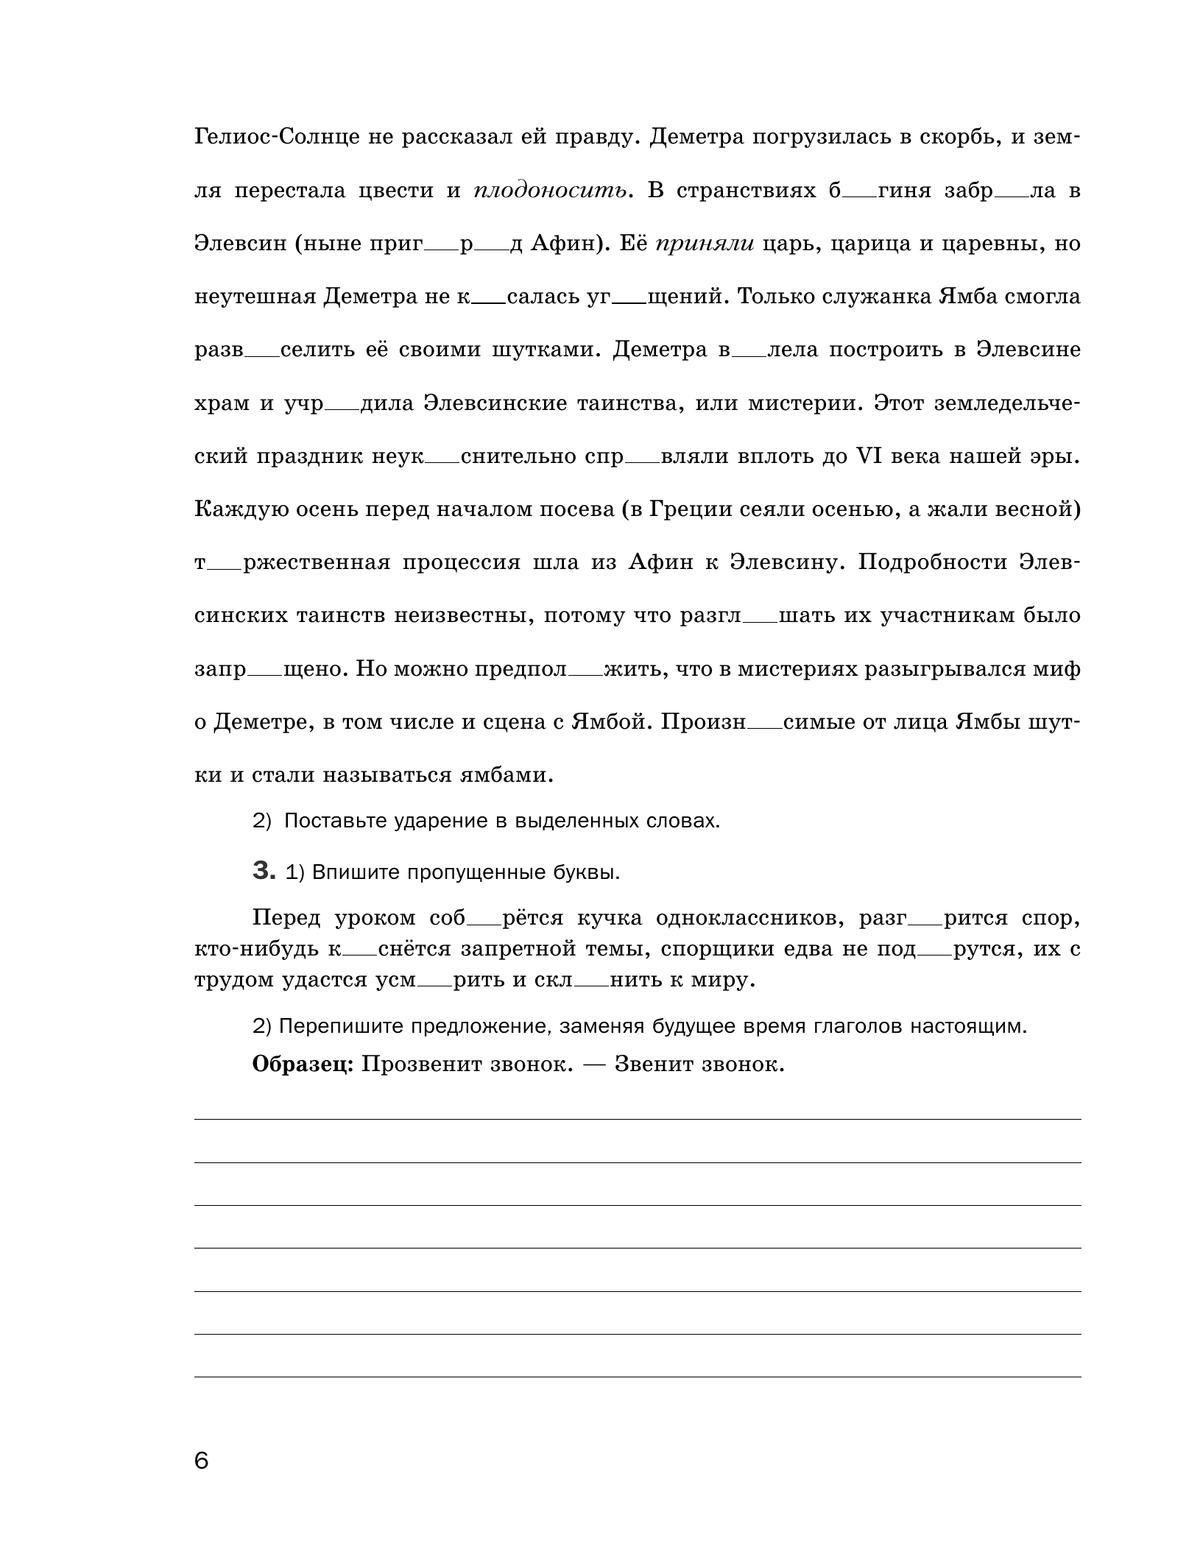 Русский язык. Рабочая тетрадь. 7 класс 5